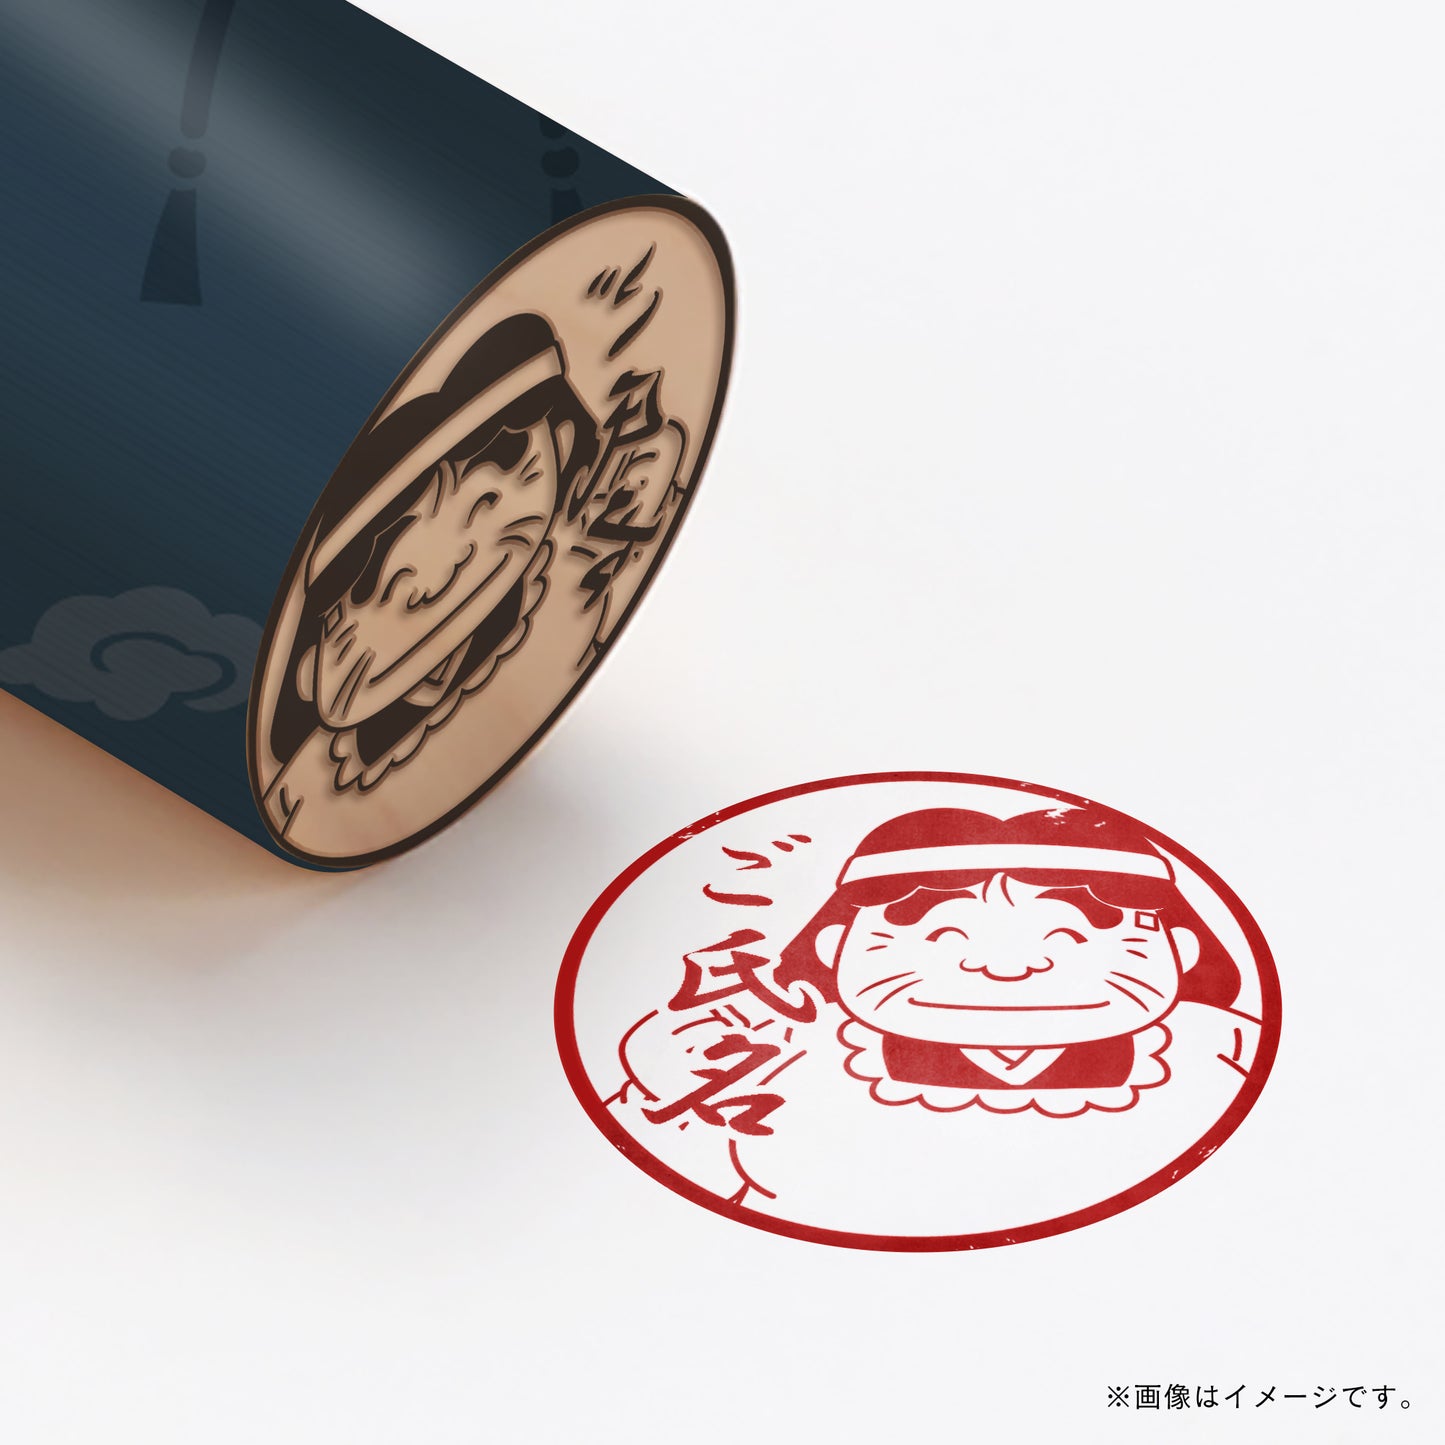 【忍たま乱太郎】忍術学園かんけい・食堂のおばちゃん・丸印18mm